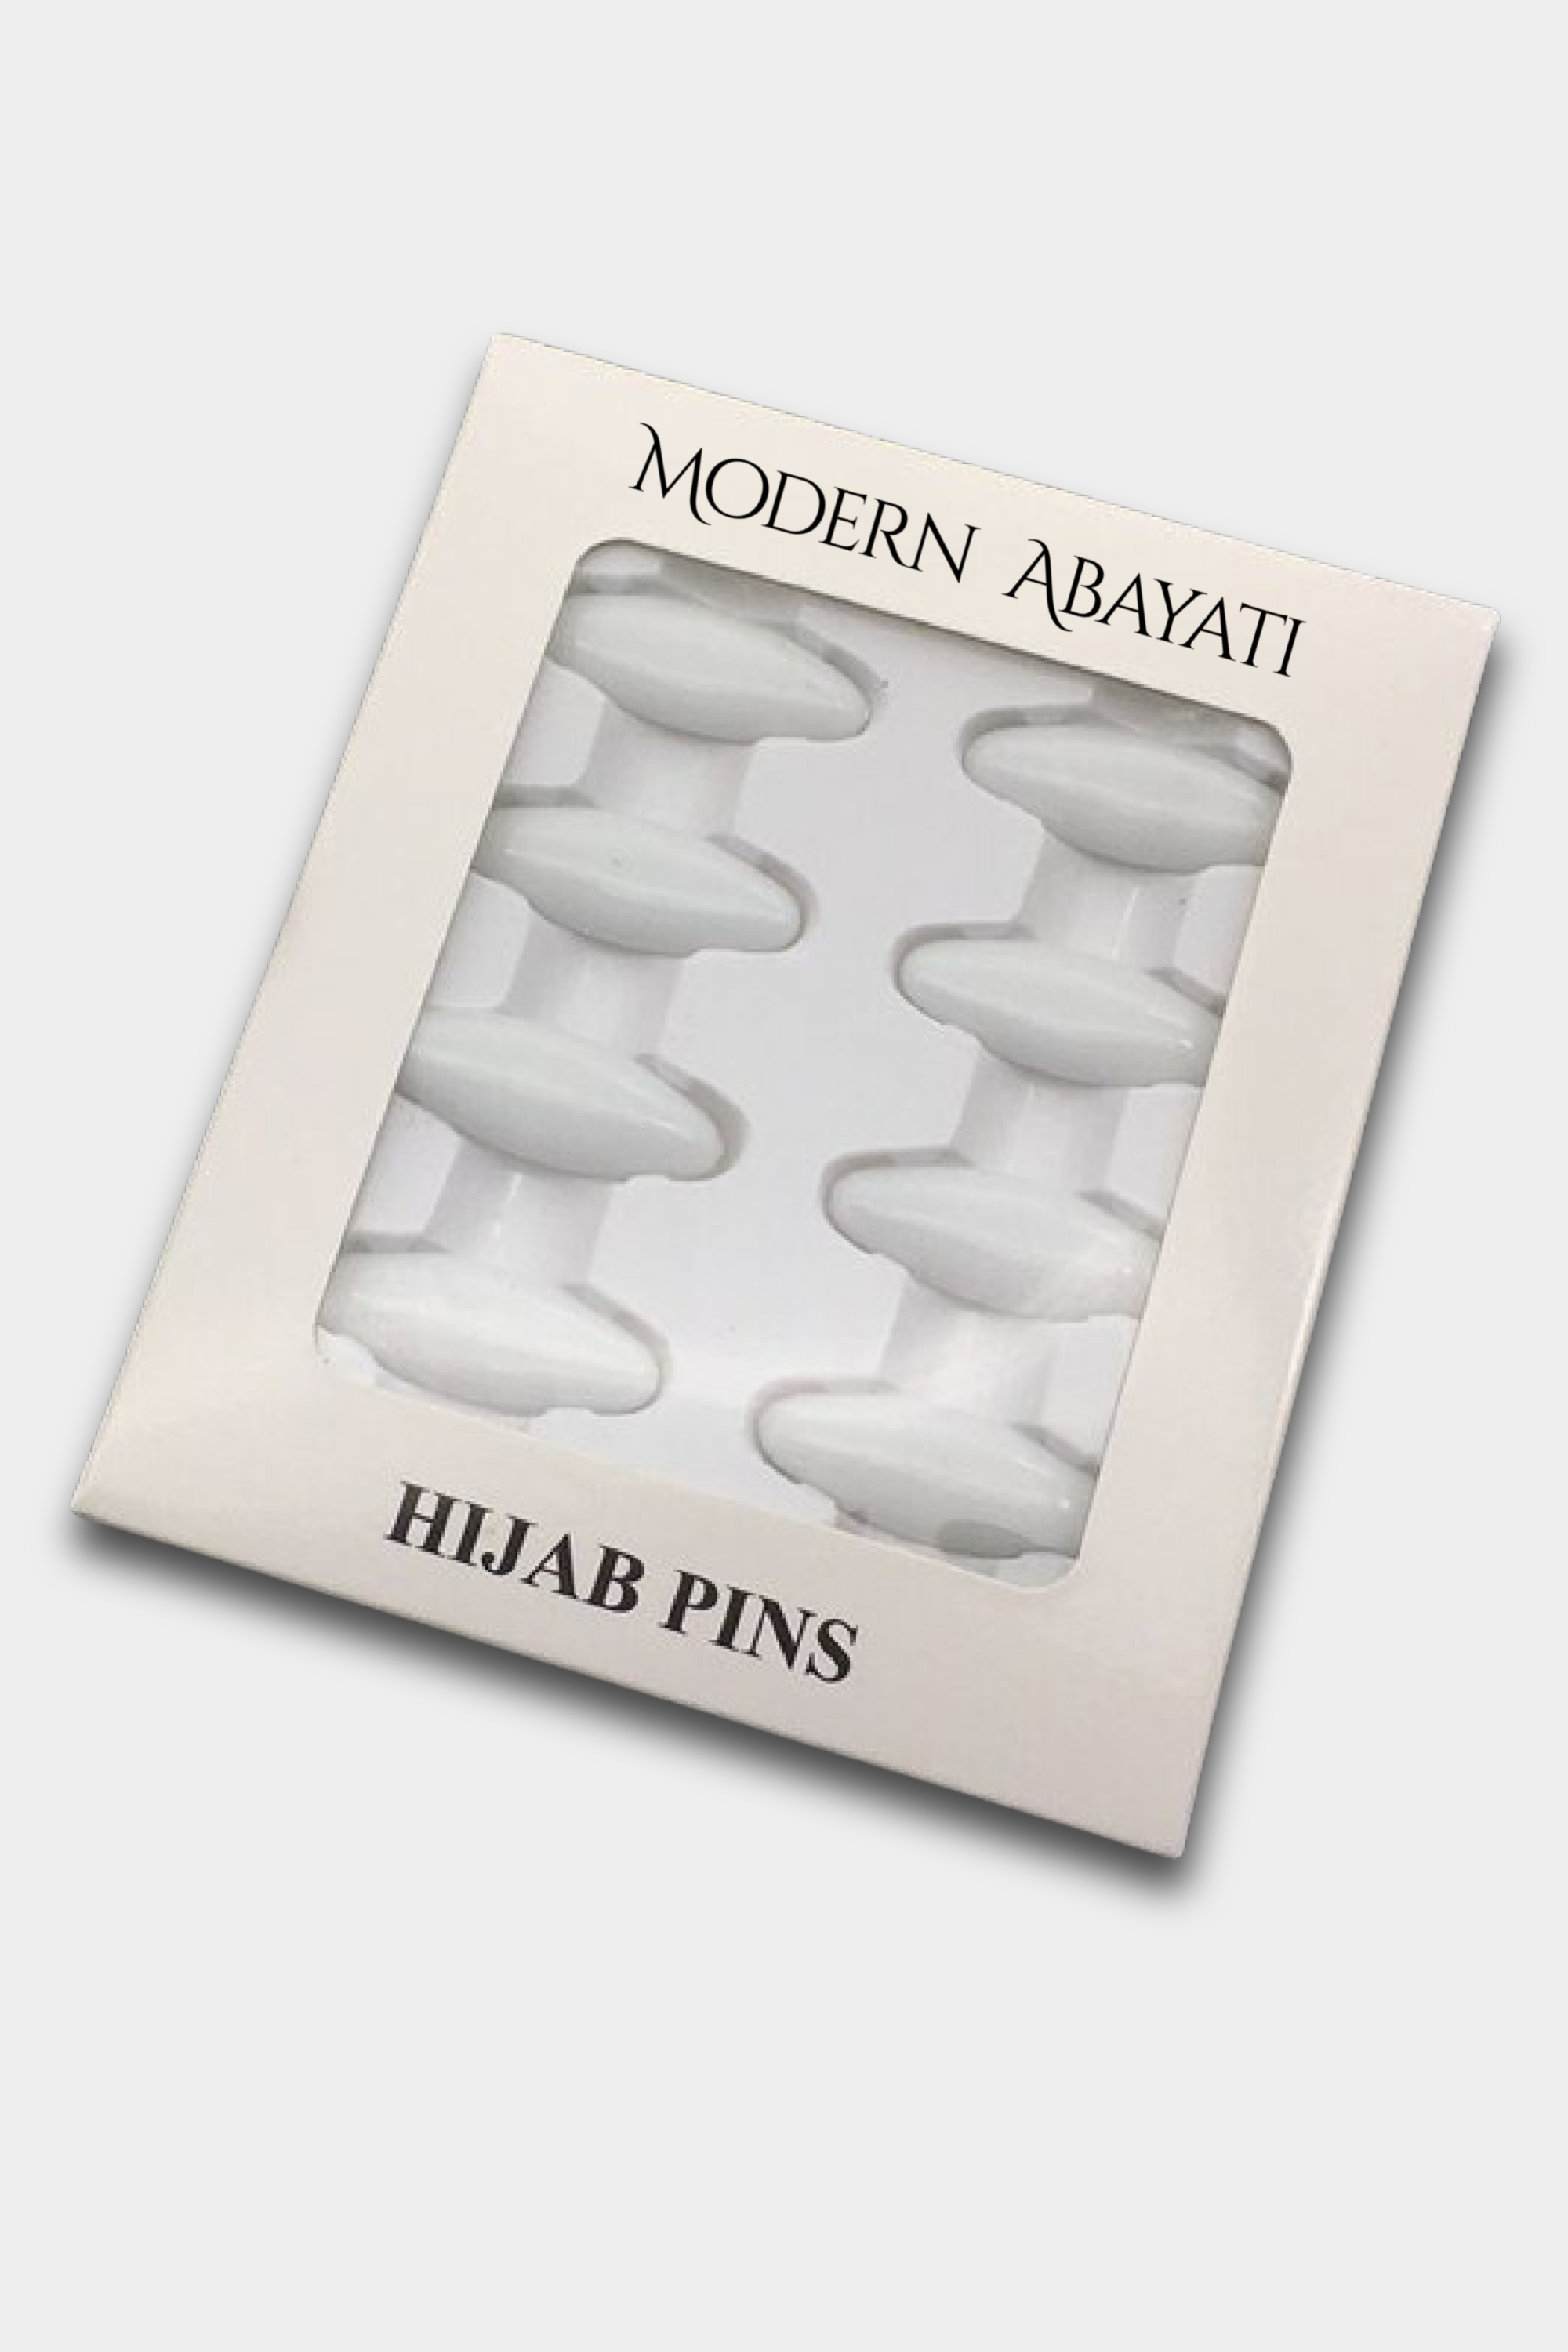 Hijab Pins – White - Modern Abayati